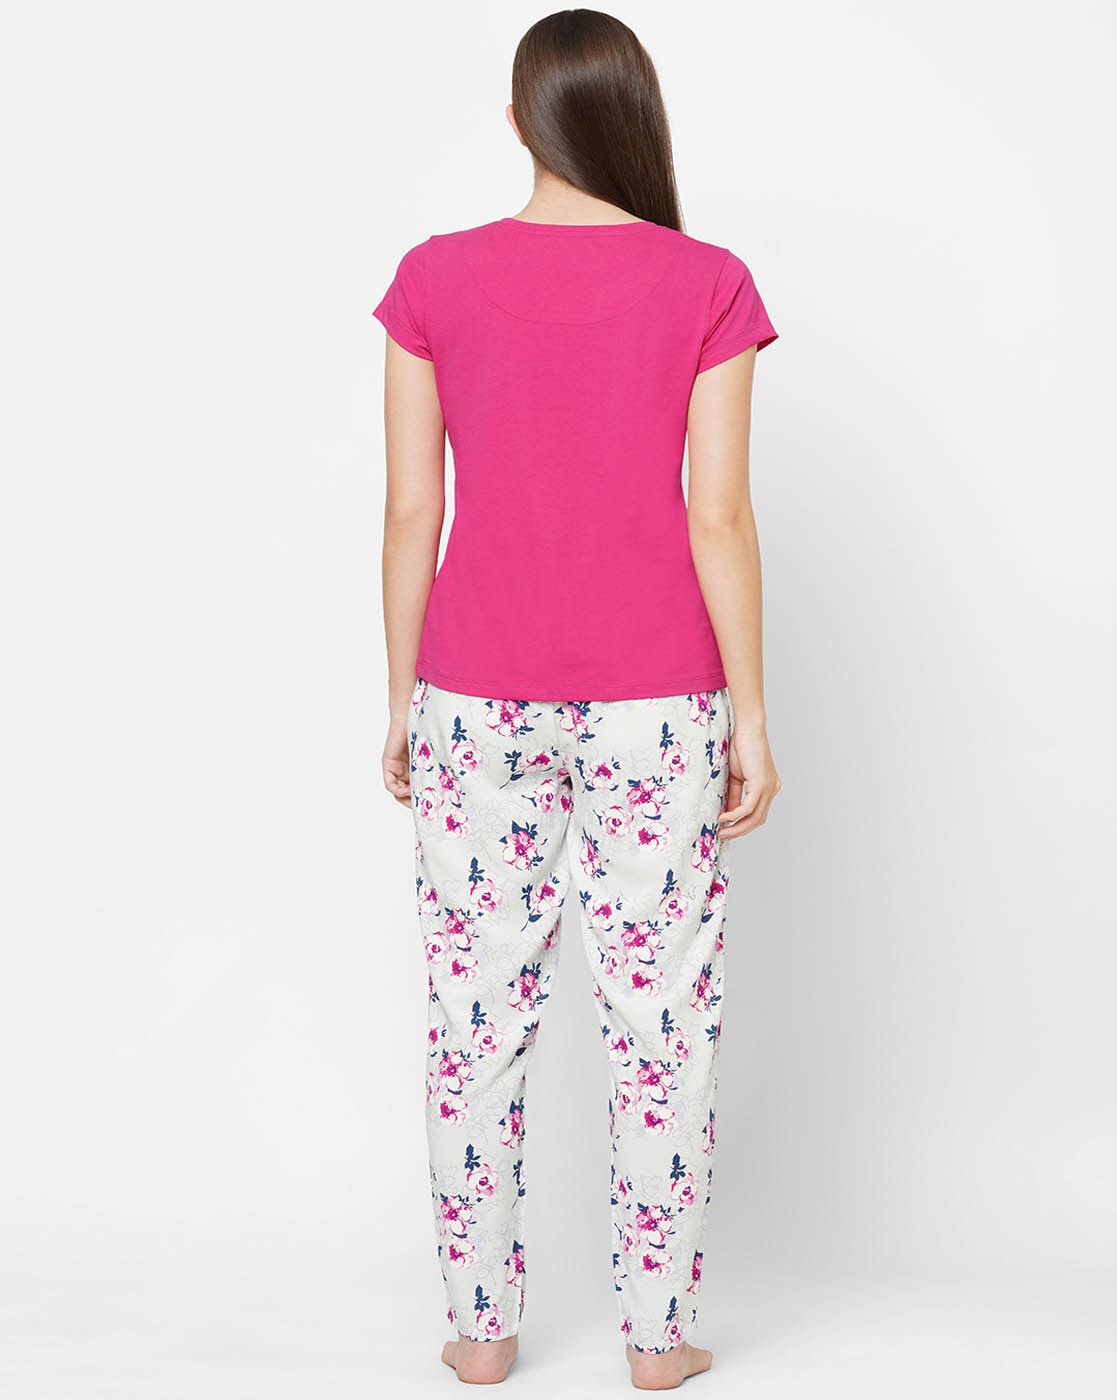 Lucky Brand Women's Pajamas Tee Tank Short Pant 4 pcs Set XXL Pink Floral  A13-63